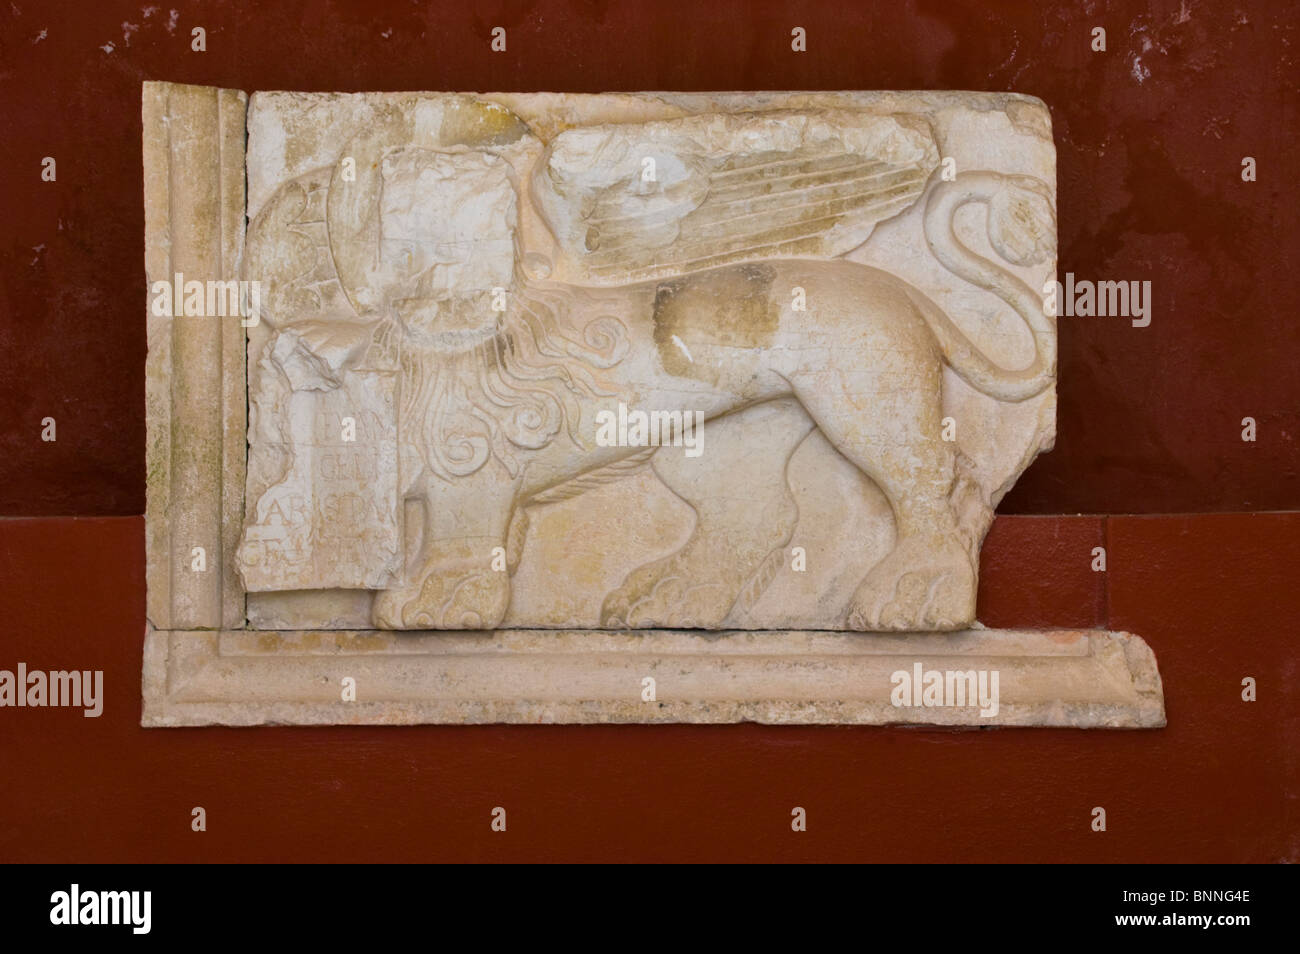 Plaque de pierre du Lion de Saint Marc à l'ancienne forteresse vénitienne dans la ville de Corfou, sur l'île grecque de Corfou Grèce GR Banque D'Images